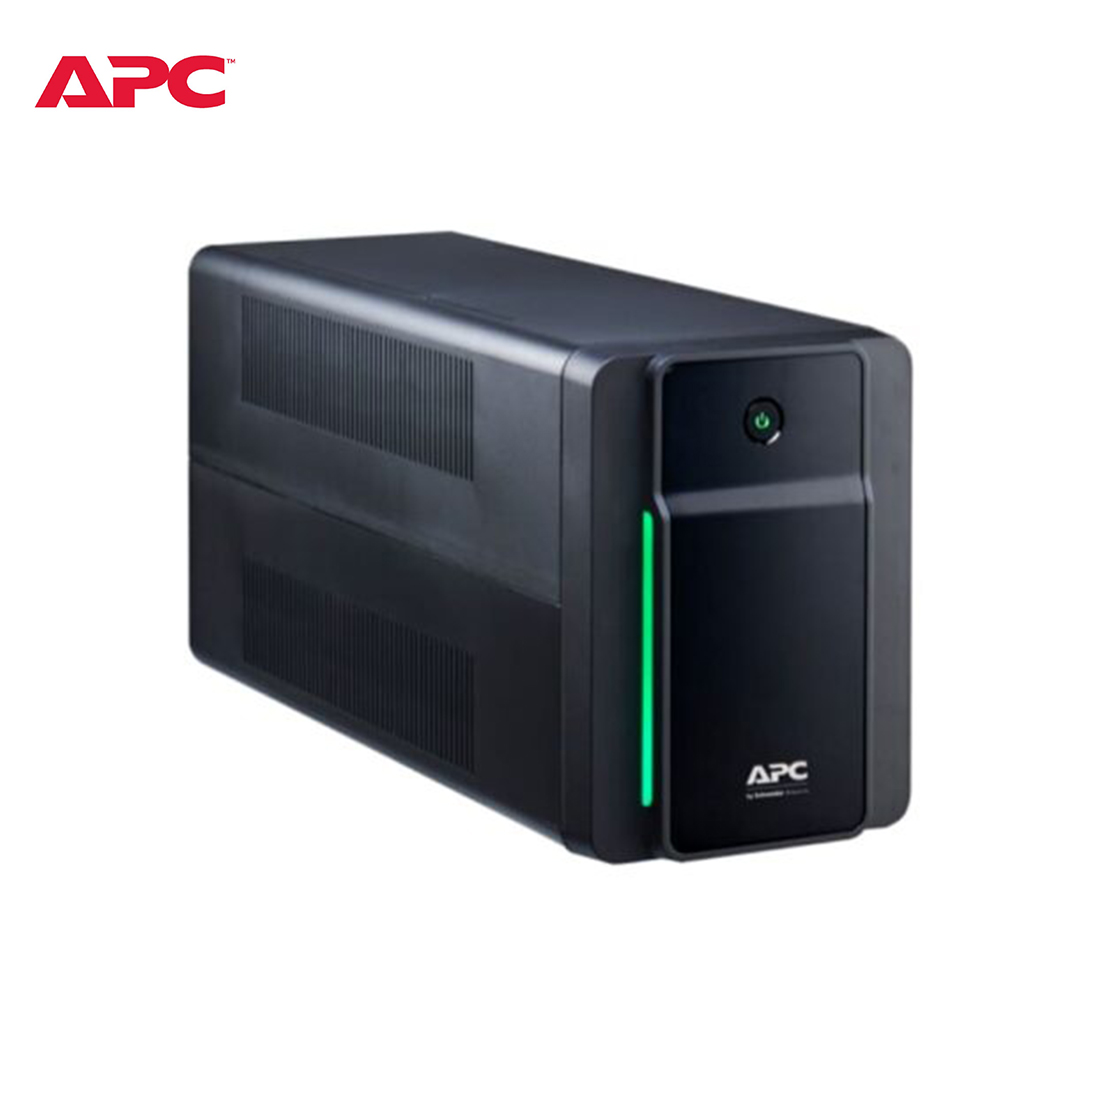 APC-Back-UPS-1200VA-230V-AVR-Universal-Sockets